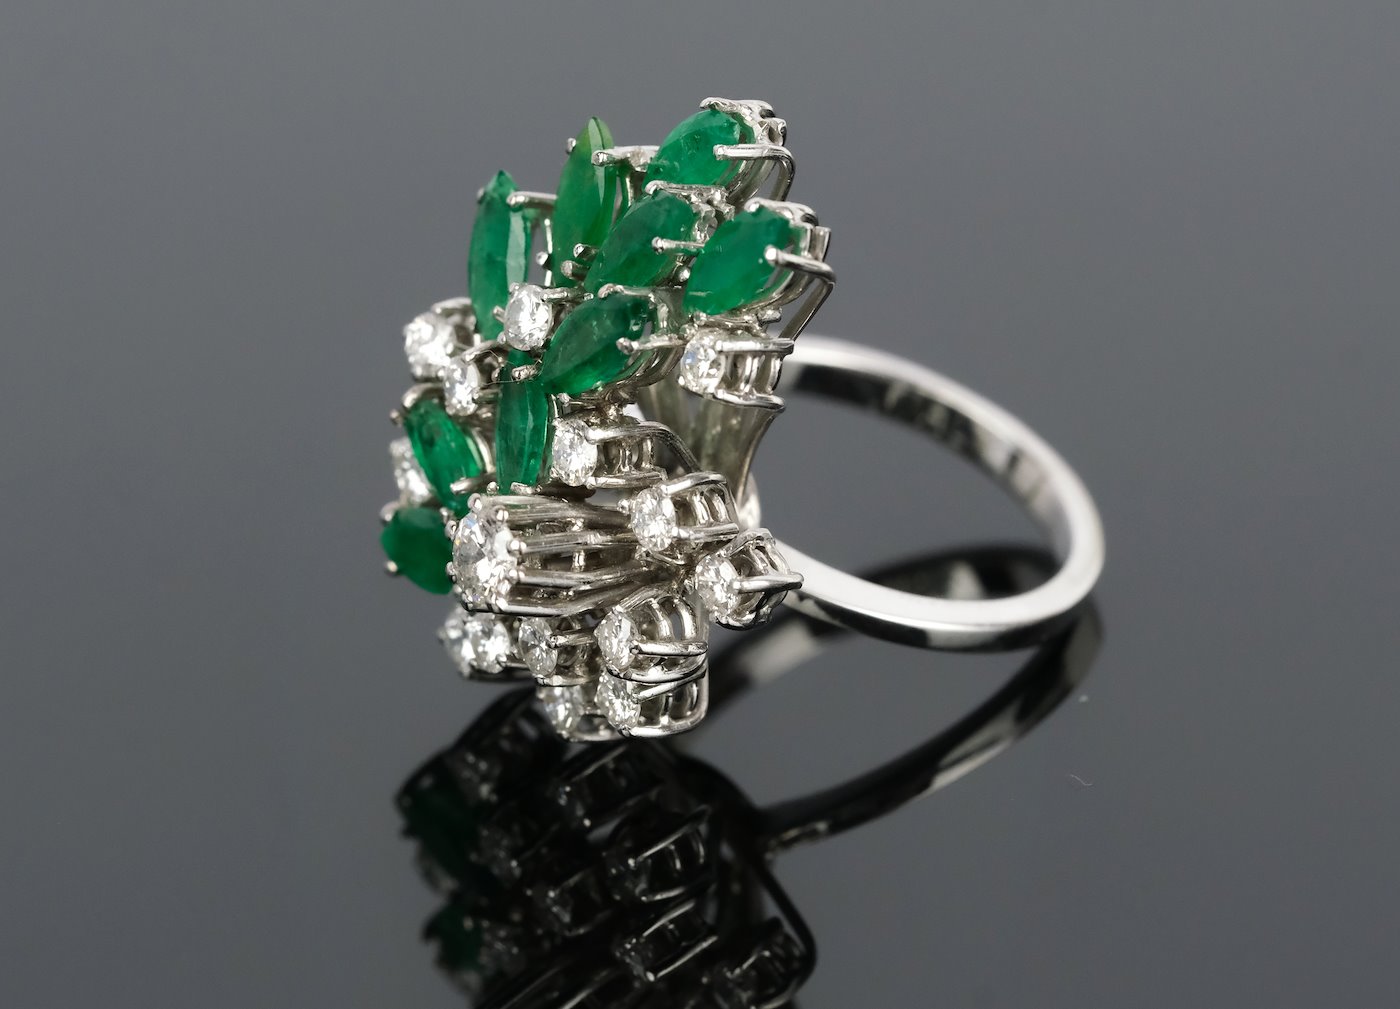 .. - Prsten se smaragdy 1,8 ct a diamanty 0,8 ct, zlato 750/1000, značeno platnou puncovní značkou "kohout", hrubá hmotnost 8,95 g